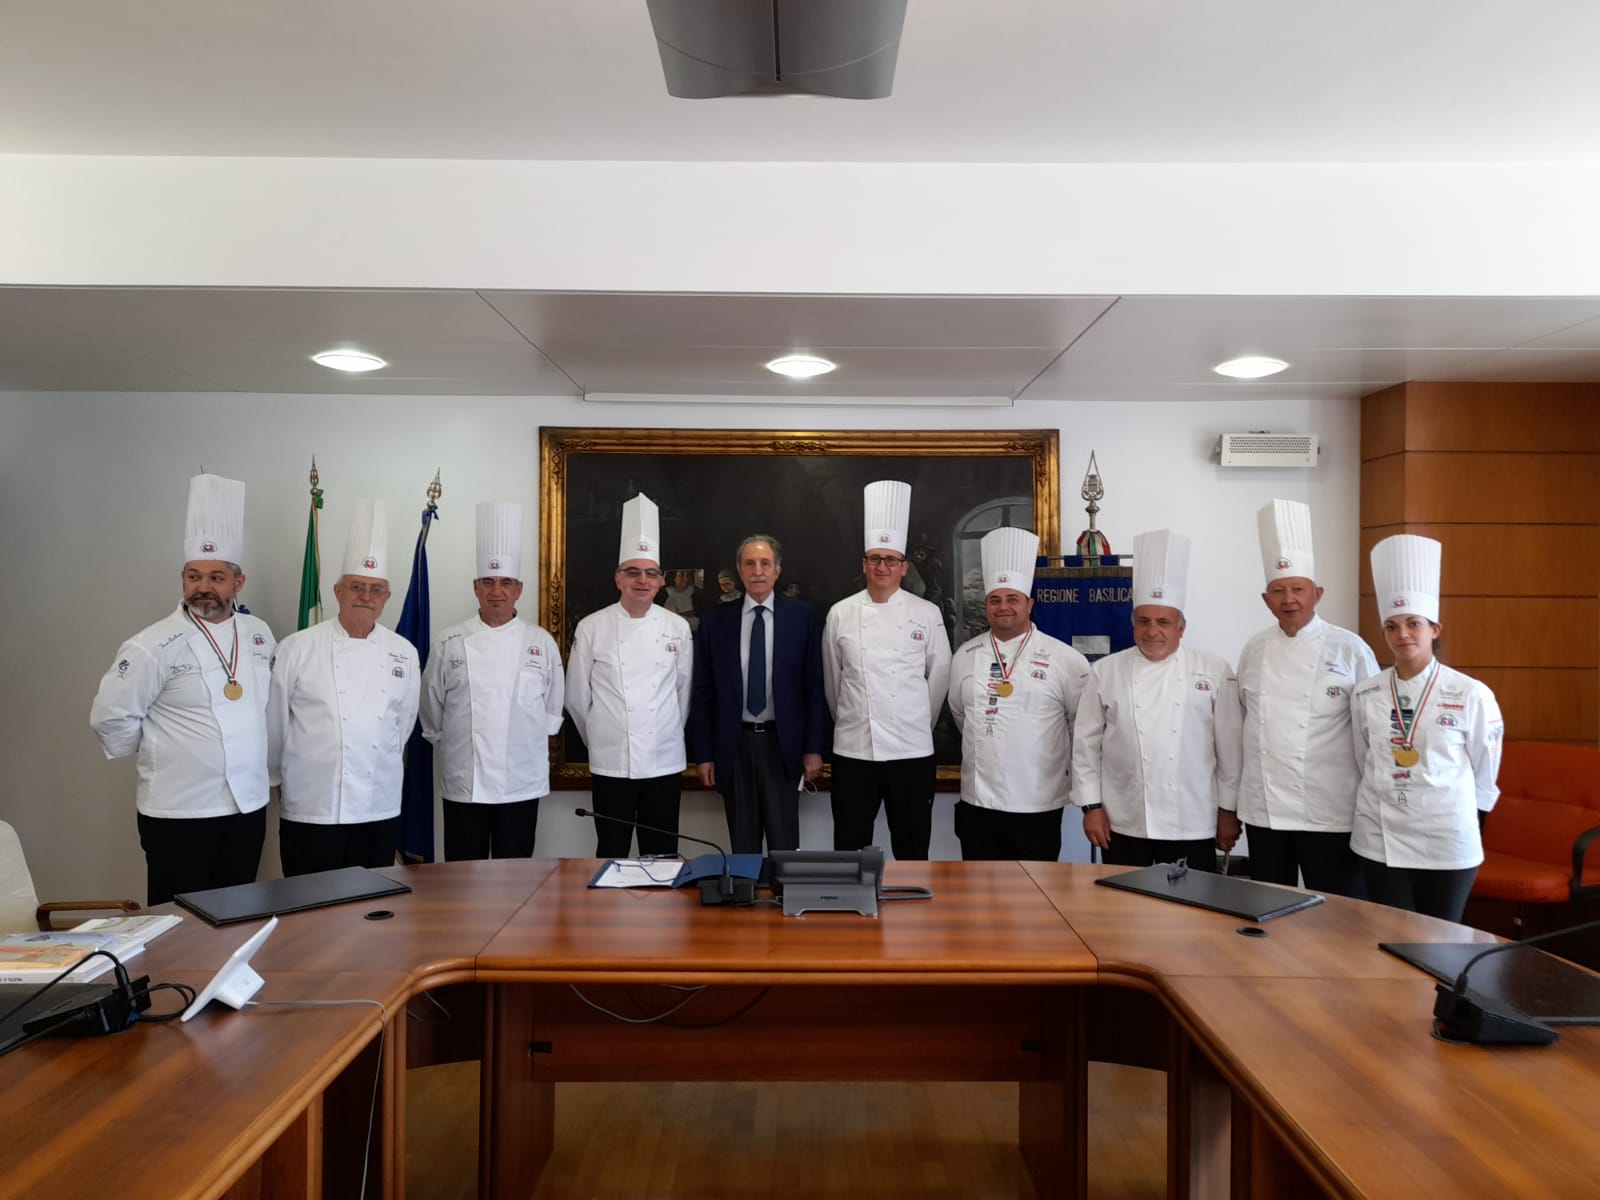 Gastronomia: Protocollo d’intesa tra Regione, Unione cuochi lucani e Federazione italiana cuochi